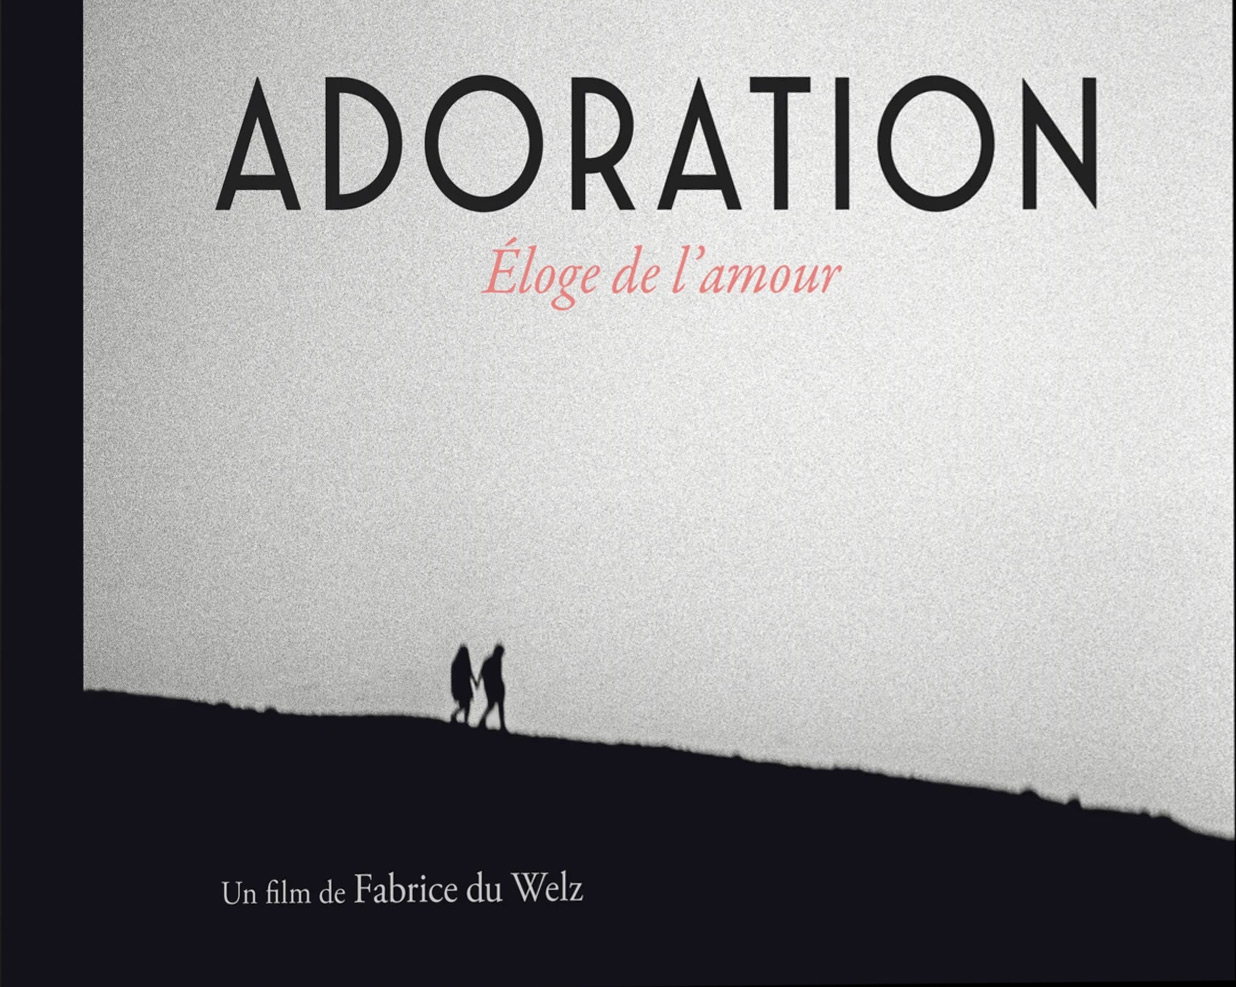 Couverture du livre: Adoration - Éloge de l'amour